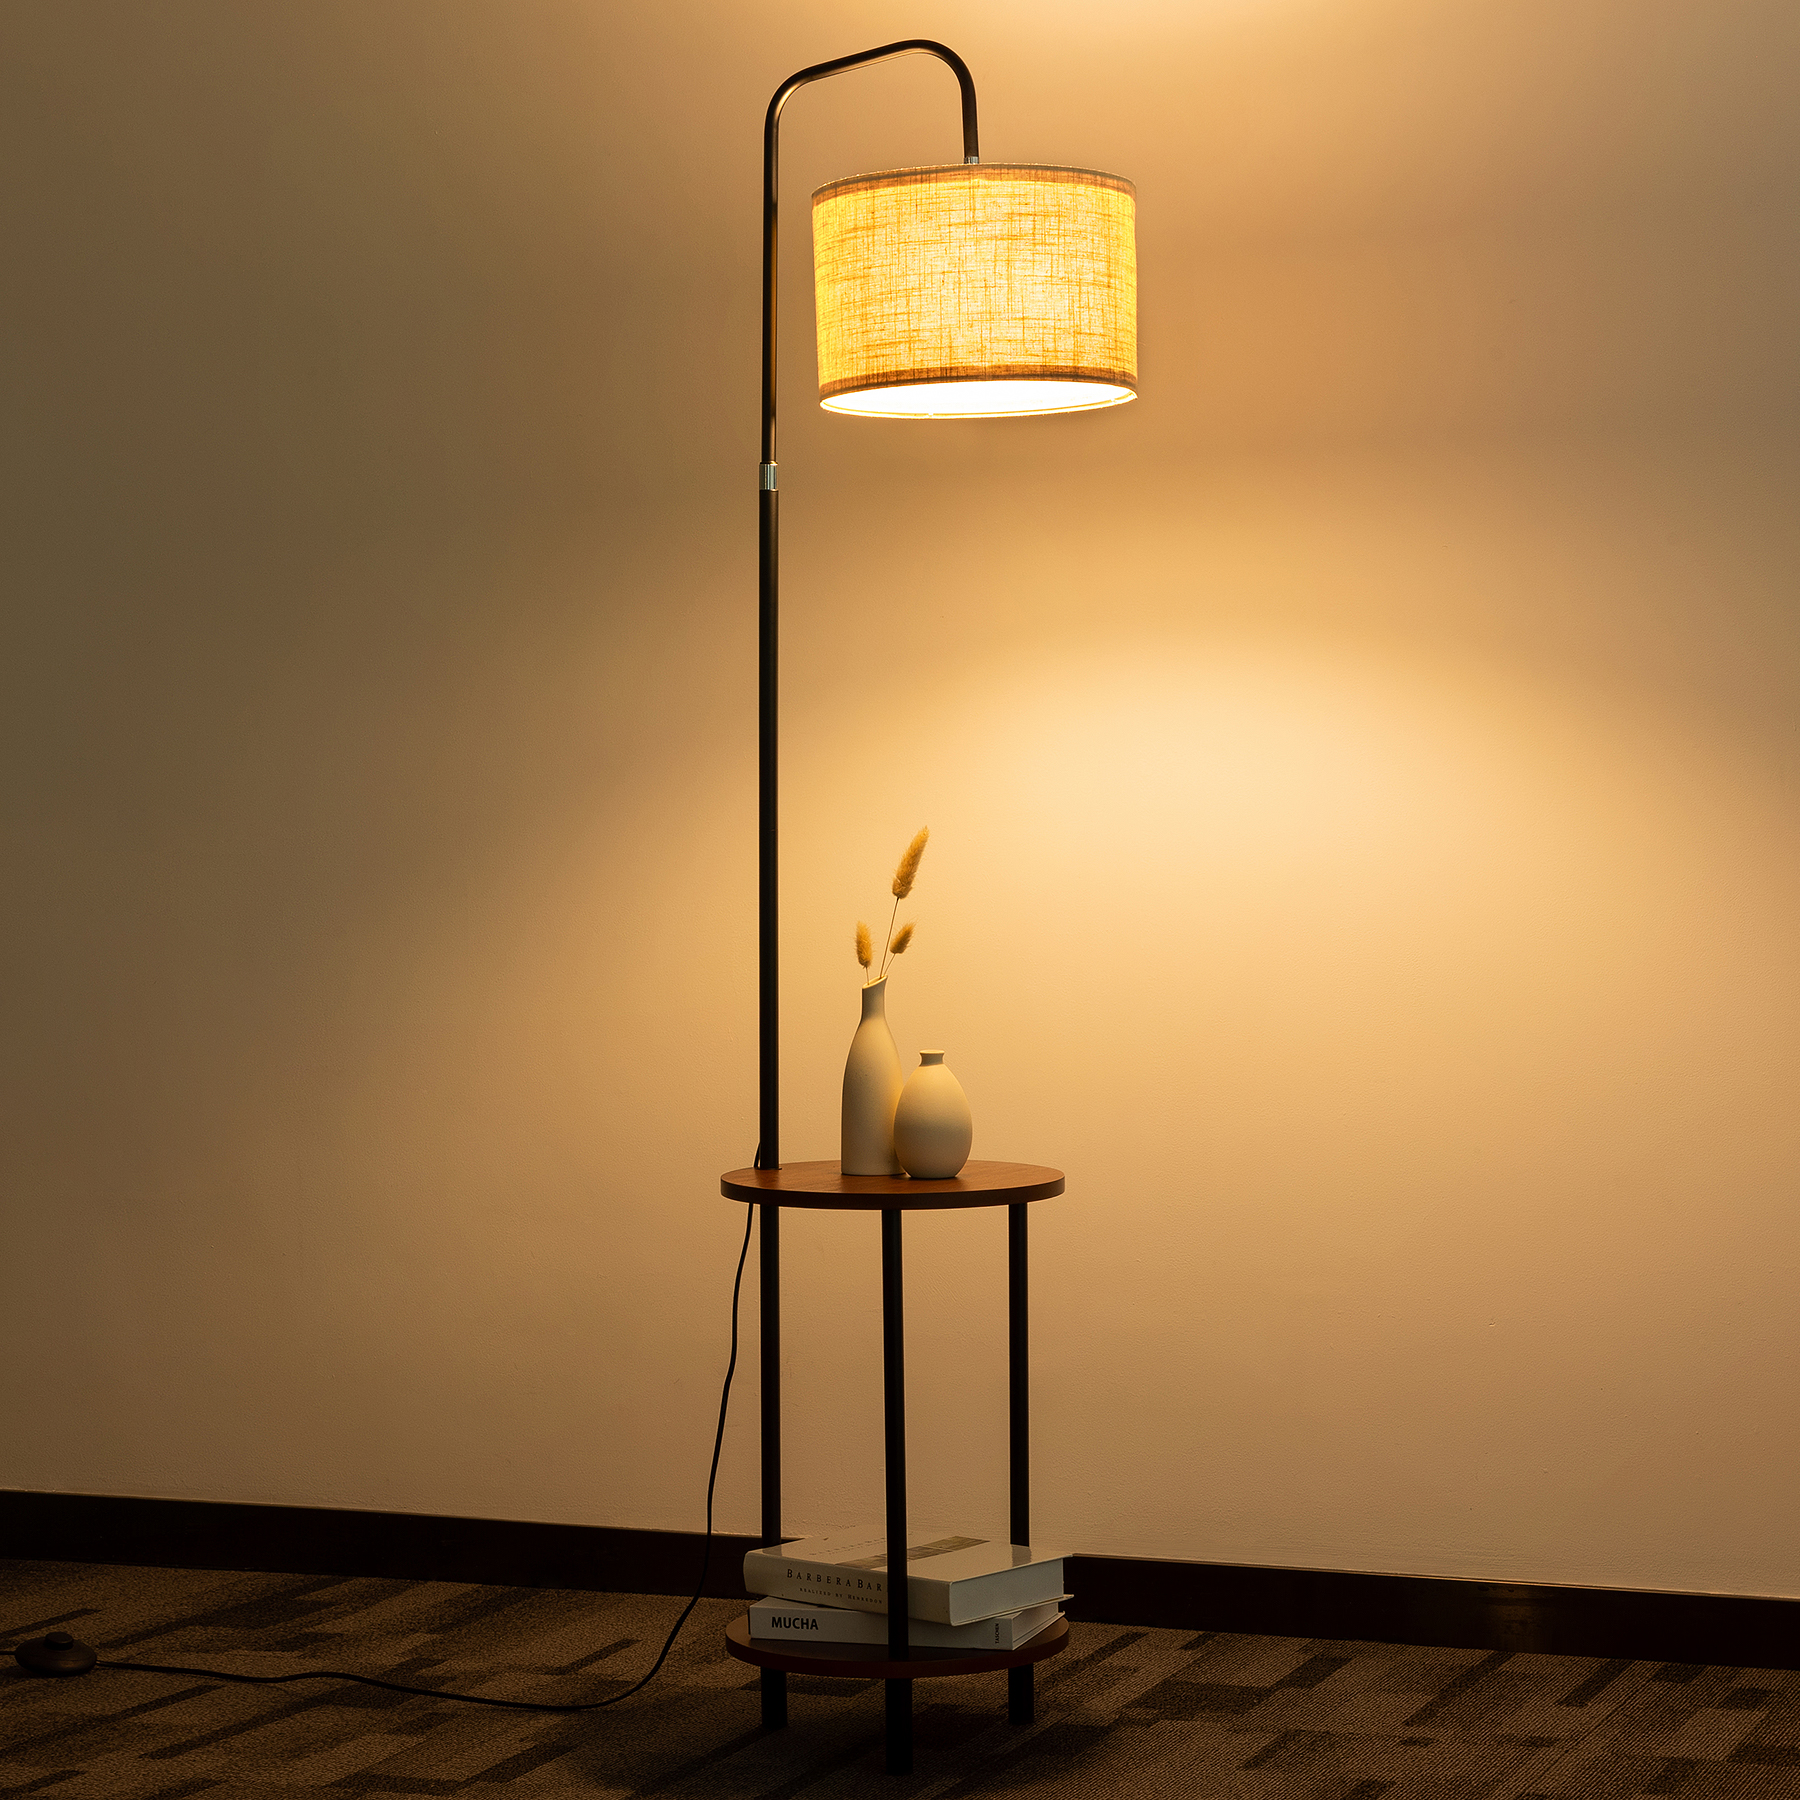 Stehlampe Holz mit Tisch, Wohnzimmer Stehlampe Verstellbare Schlafzimmer TOMONS Stehlampe für